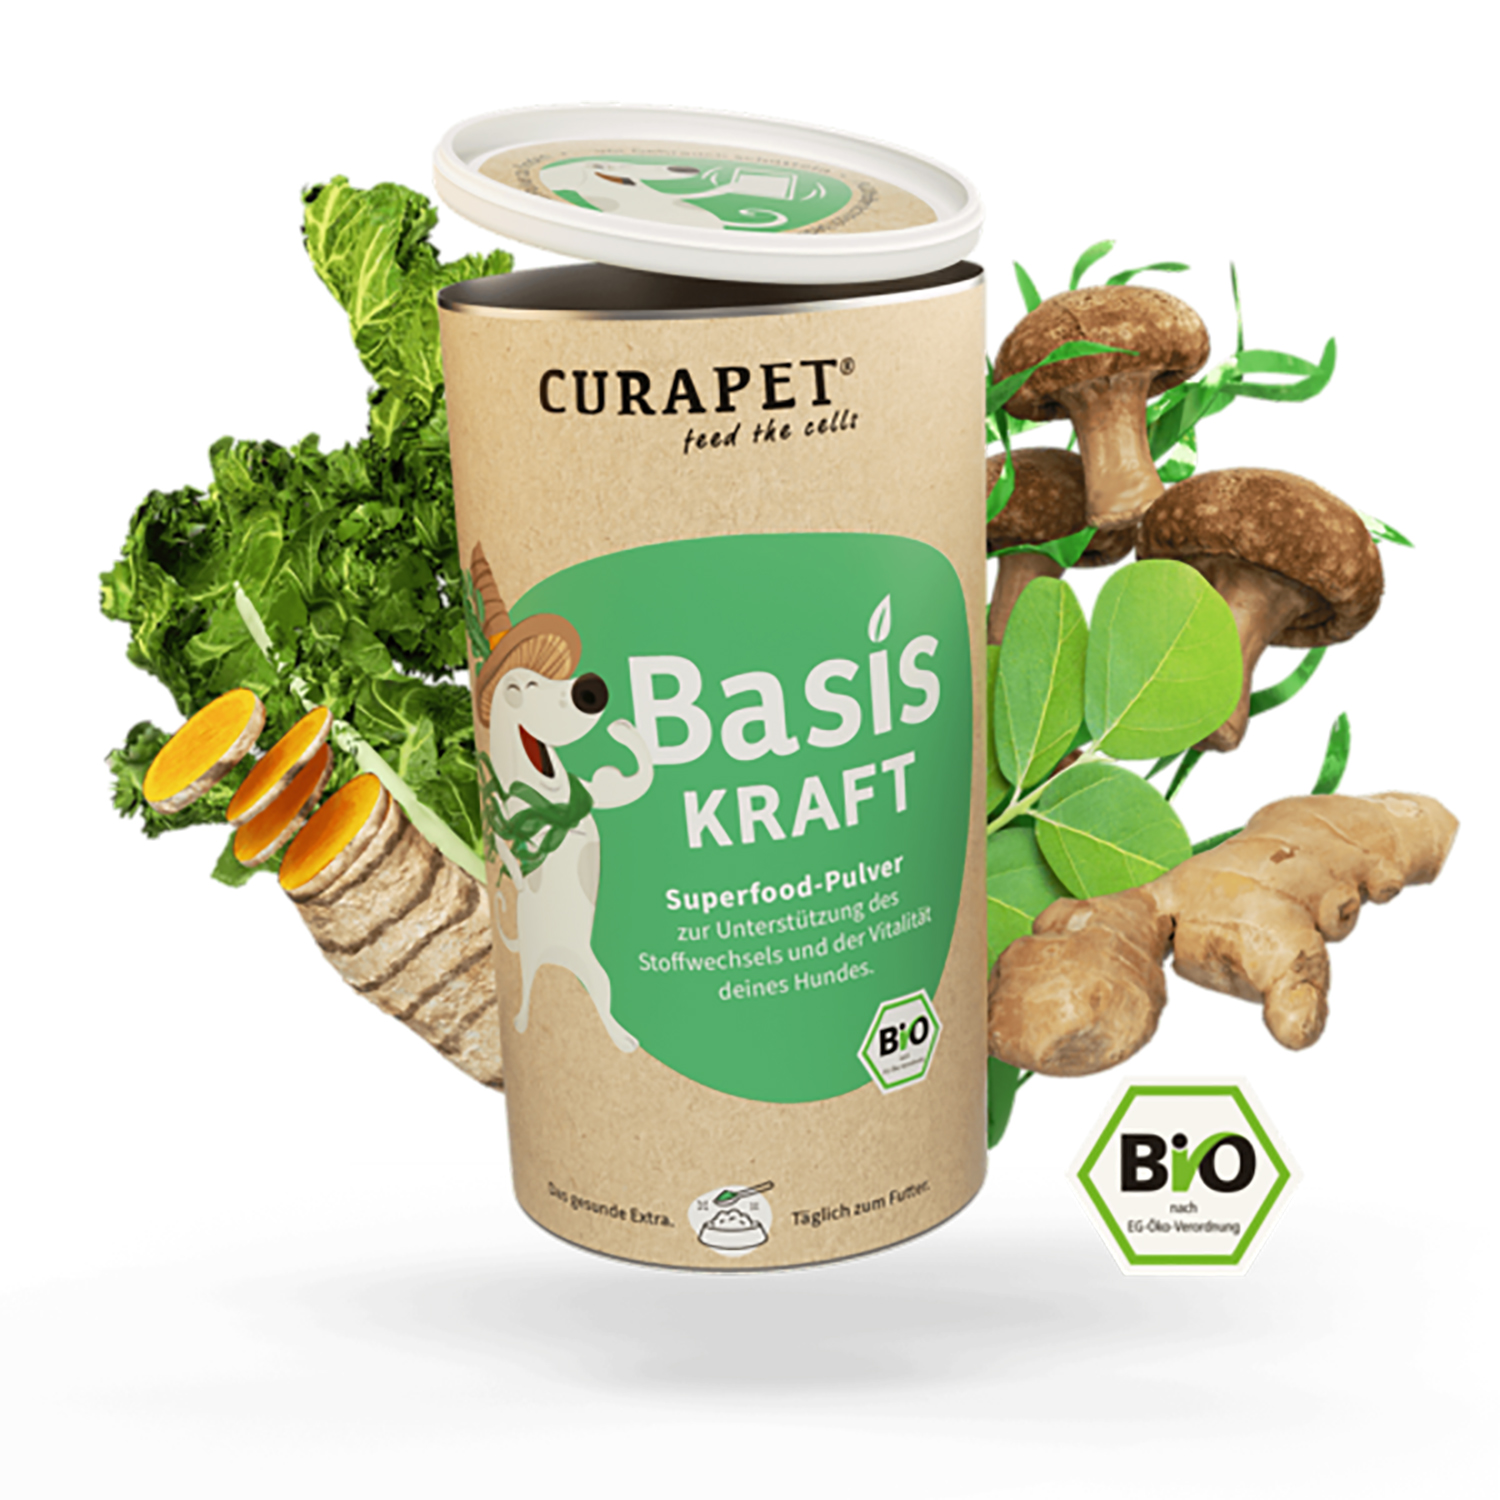 BasisKraft Bio-Superfood-Pulver von Curapet – 200g